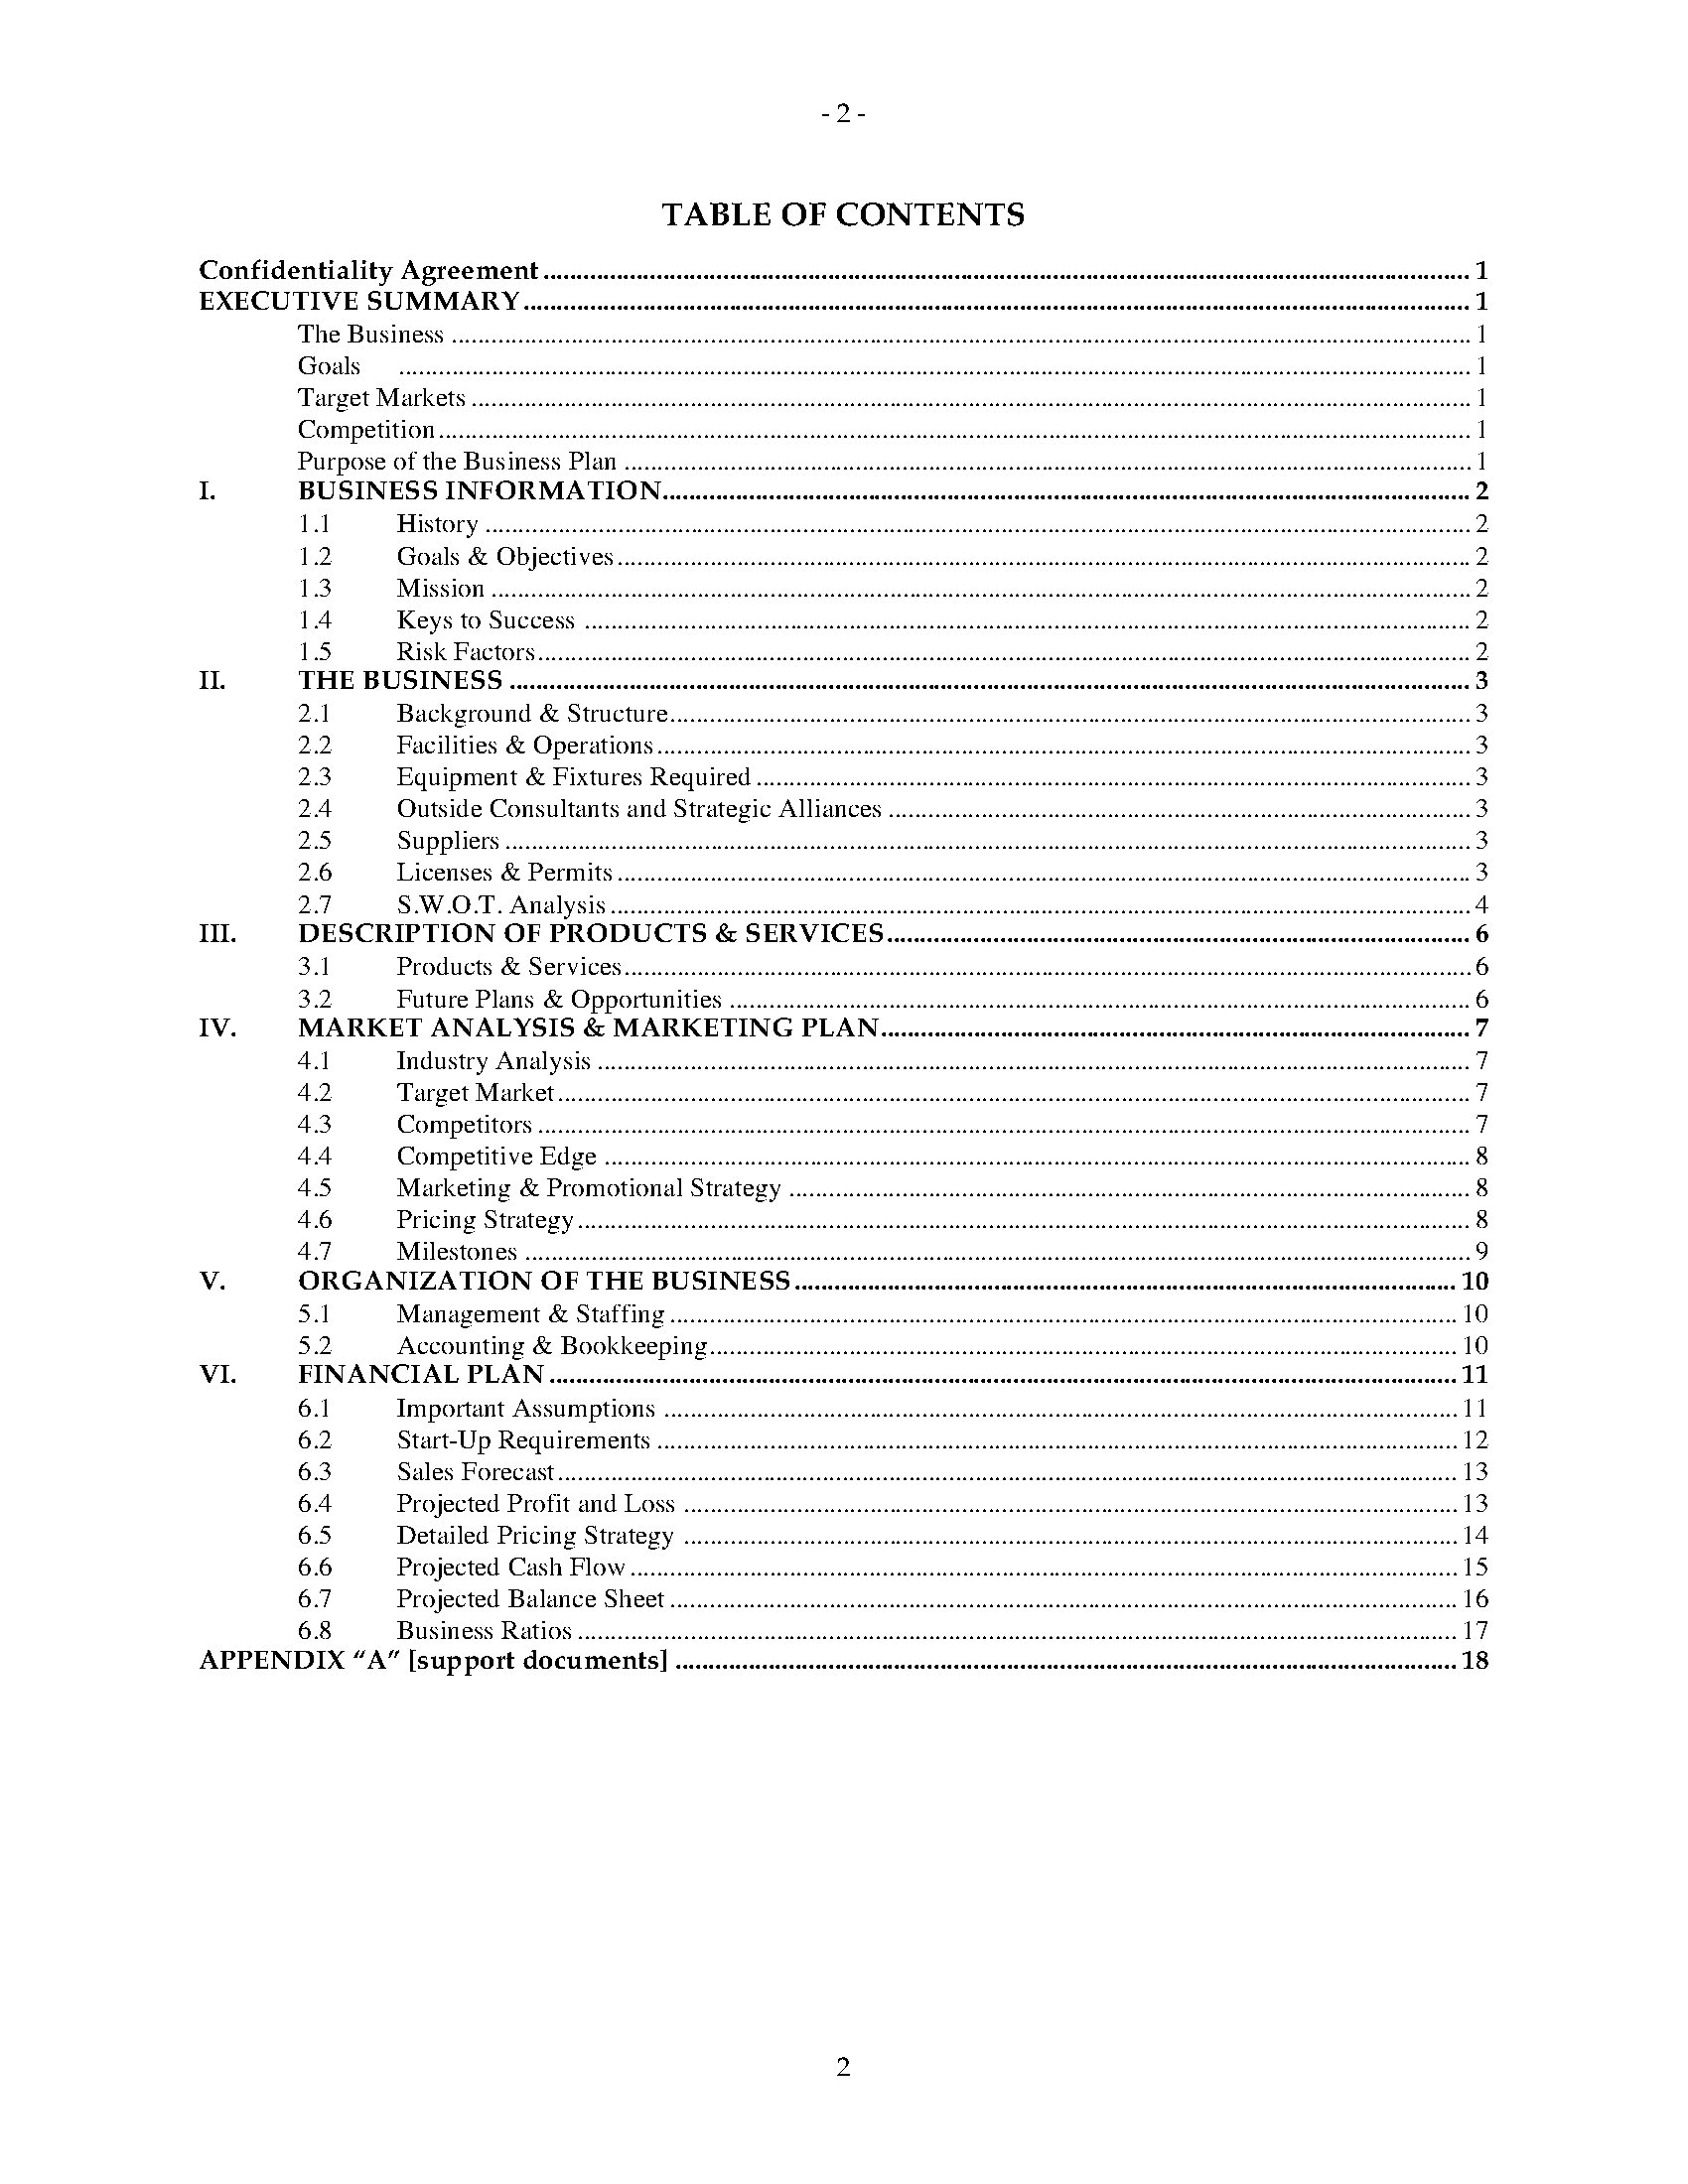 tailoring business plan sample pdf download